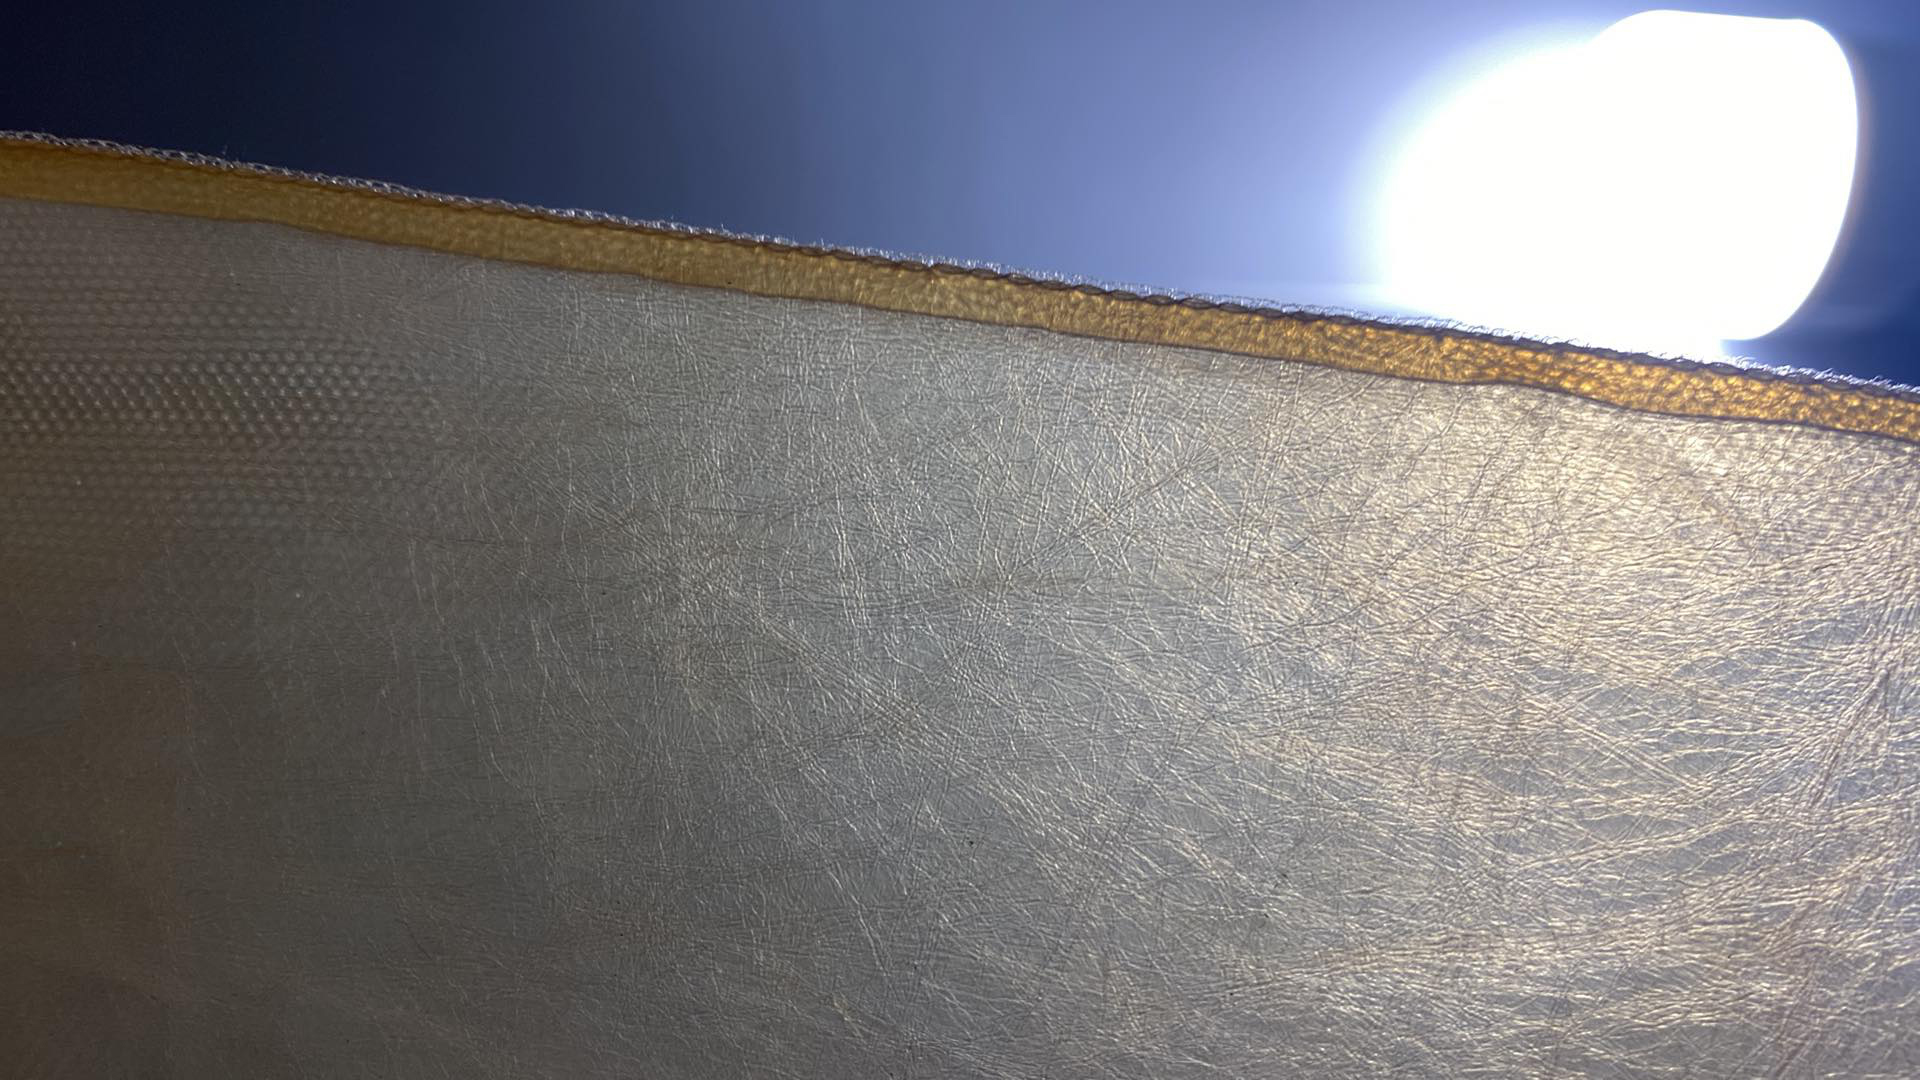 Bức ảnh cho thấy đường may trên vải da Scoby không khác chất liệu vải thông thường